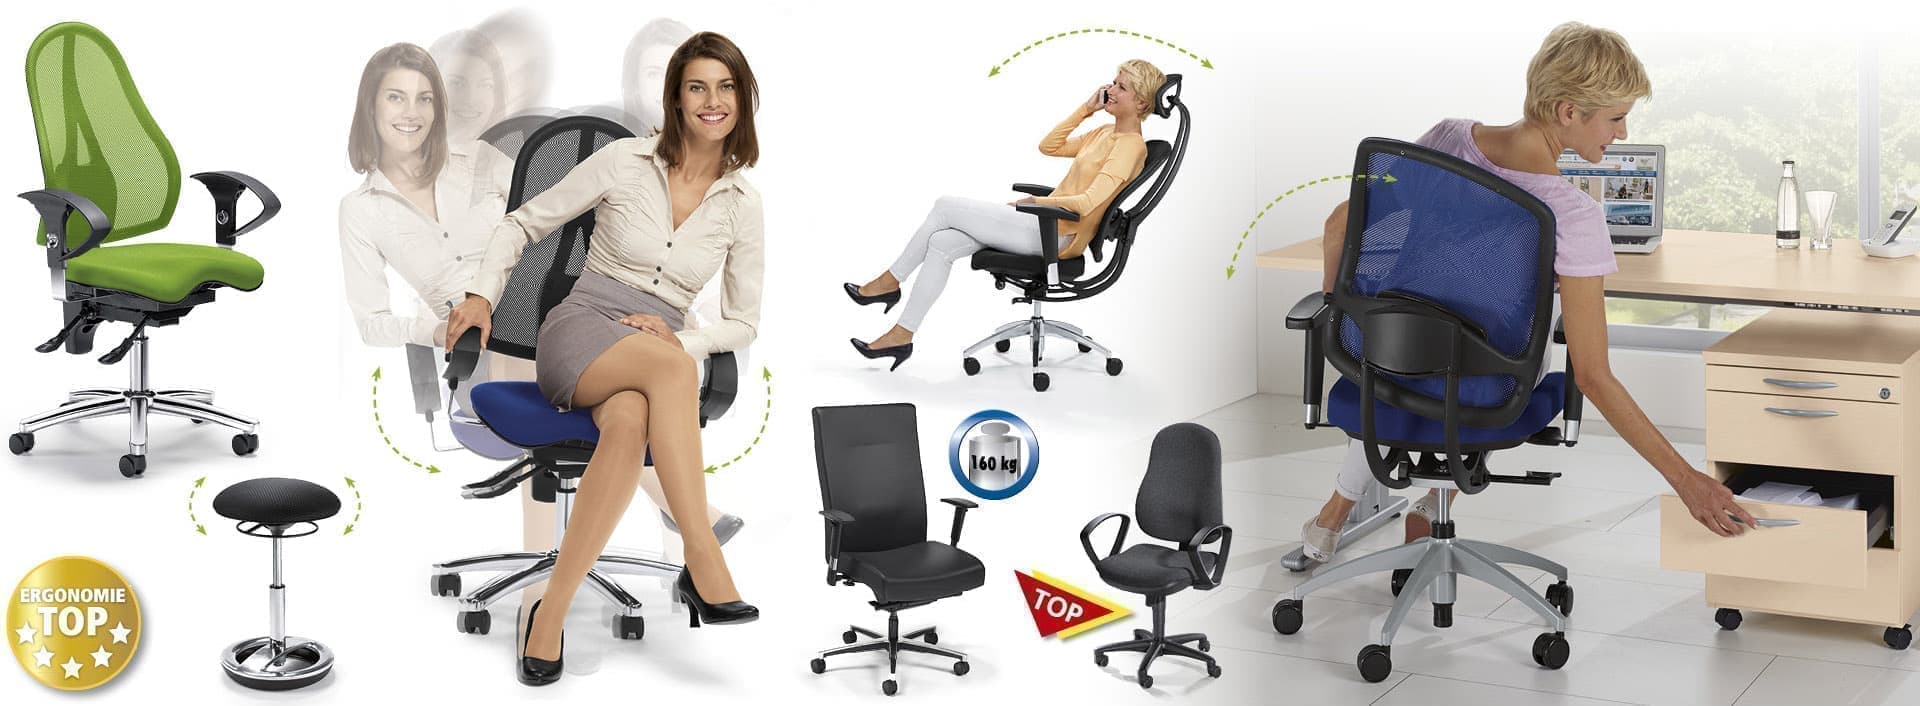 Eine Übersicht verschiedener ergonomischer Bürostühle, teilweise mit Demonstation von beweglichen Rückenlehnen und Sitzflächen